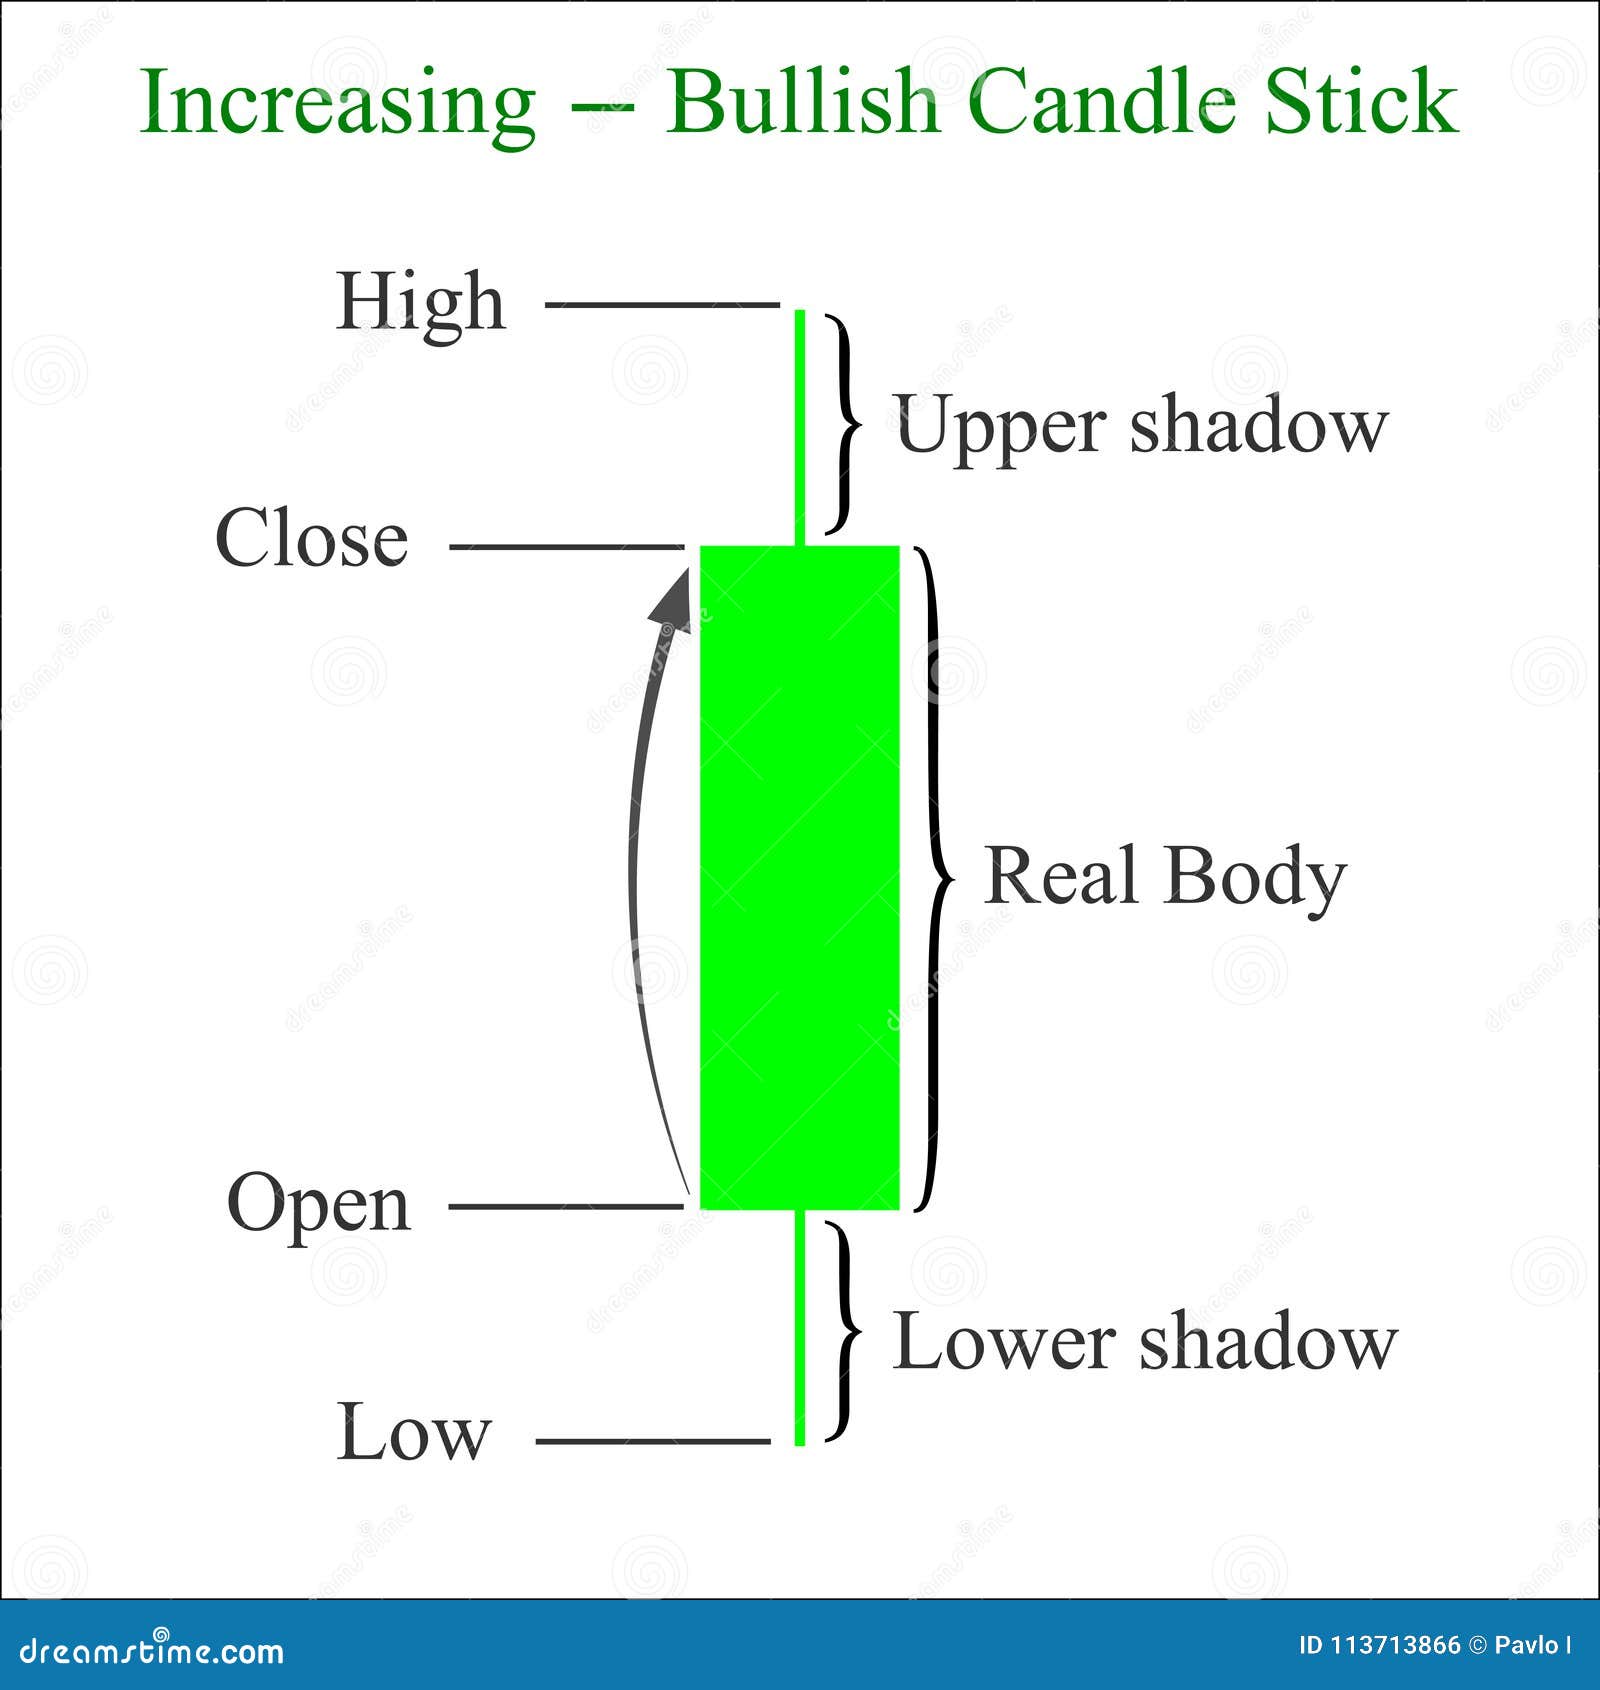 Candlestick Chart Patterns Youtube